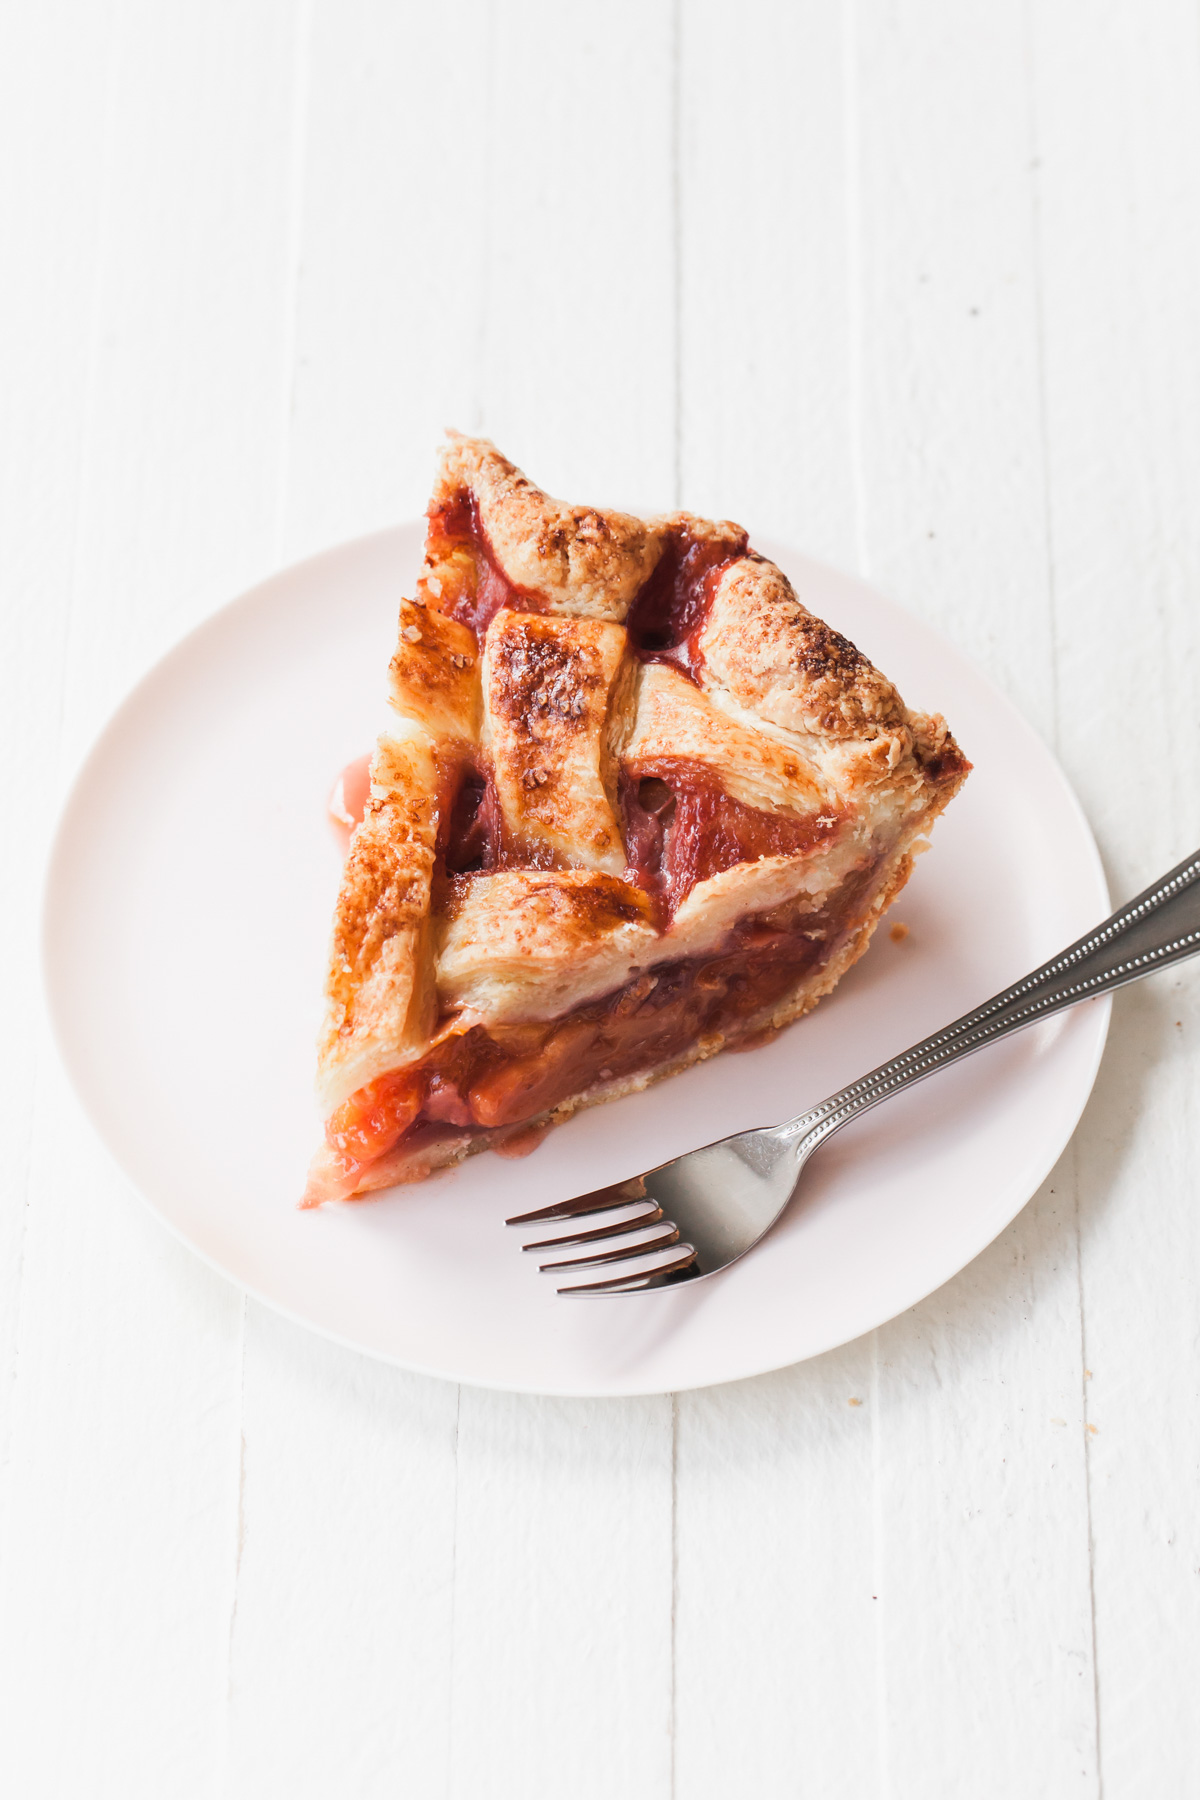 A slice of peach strawberry pie